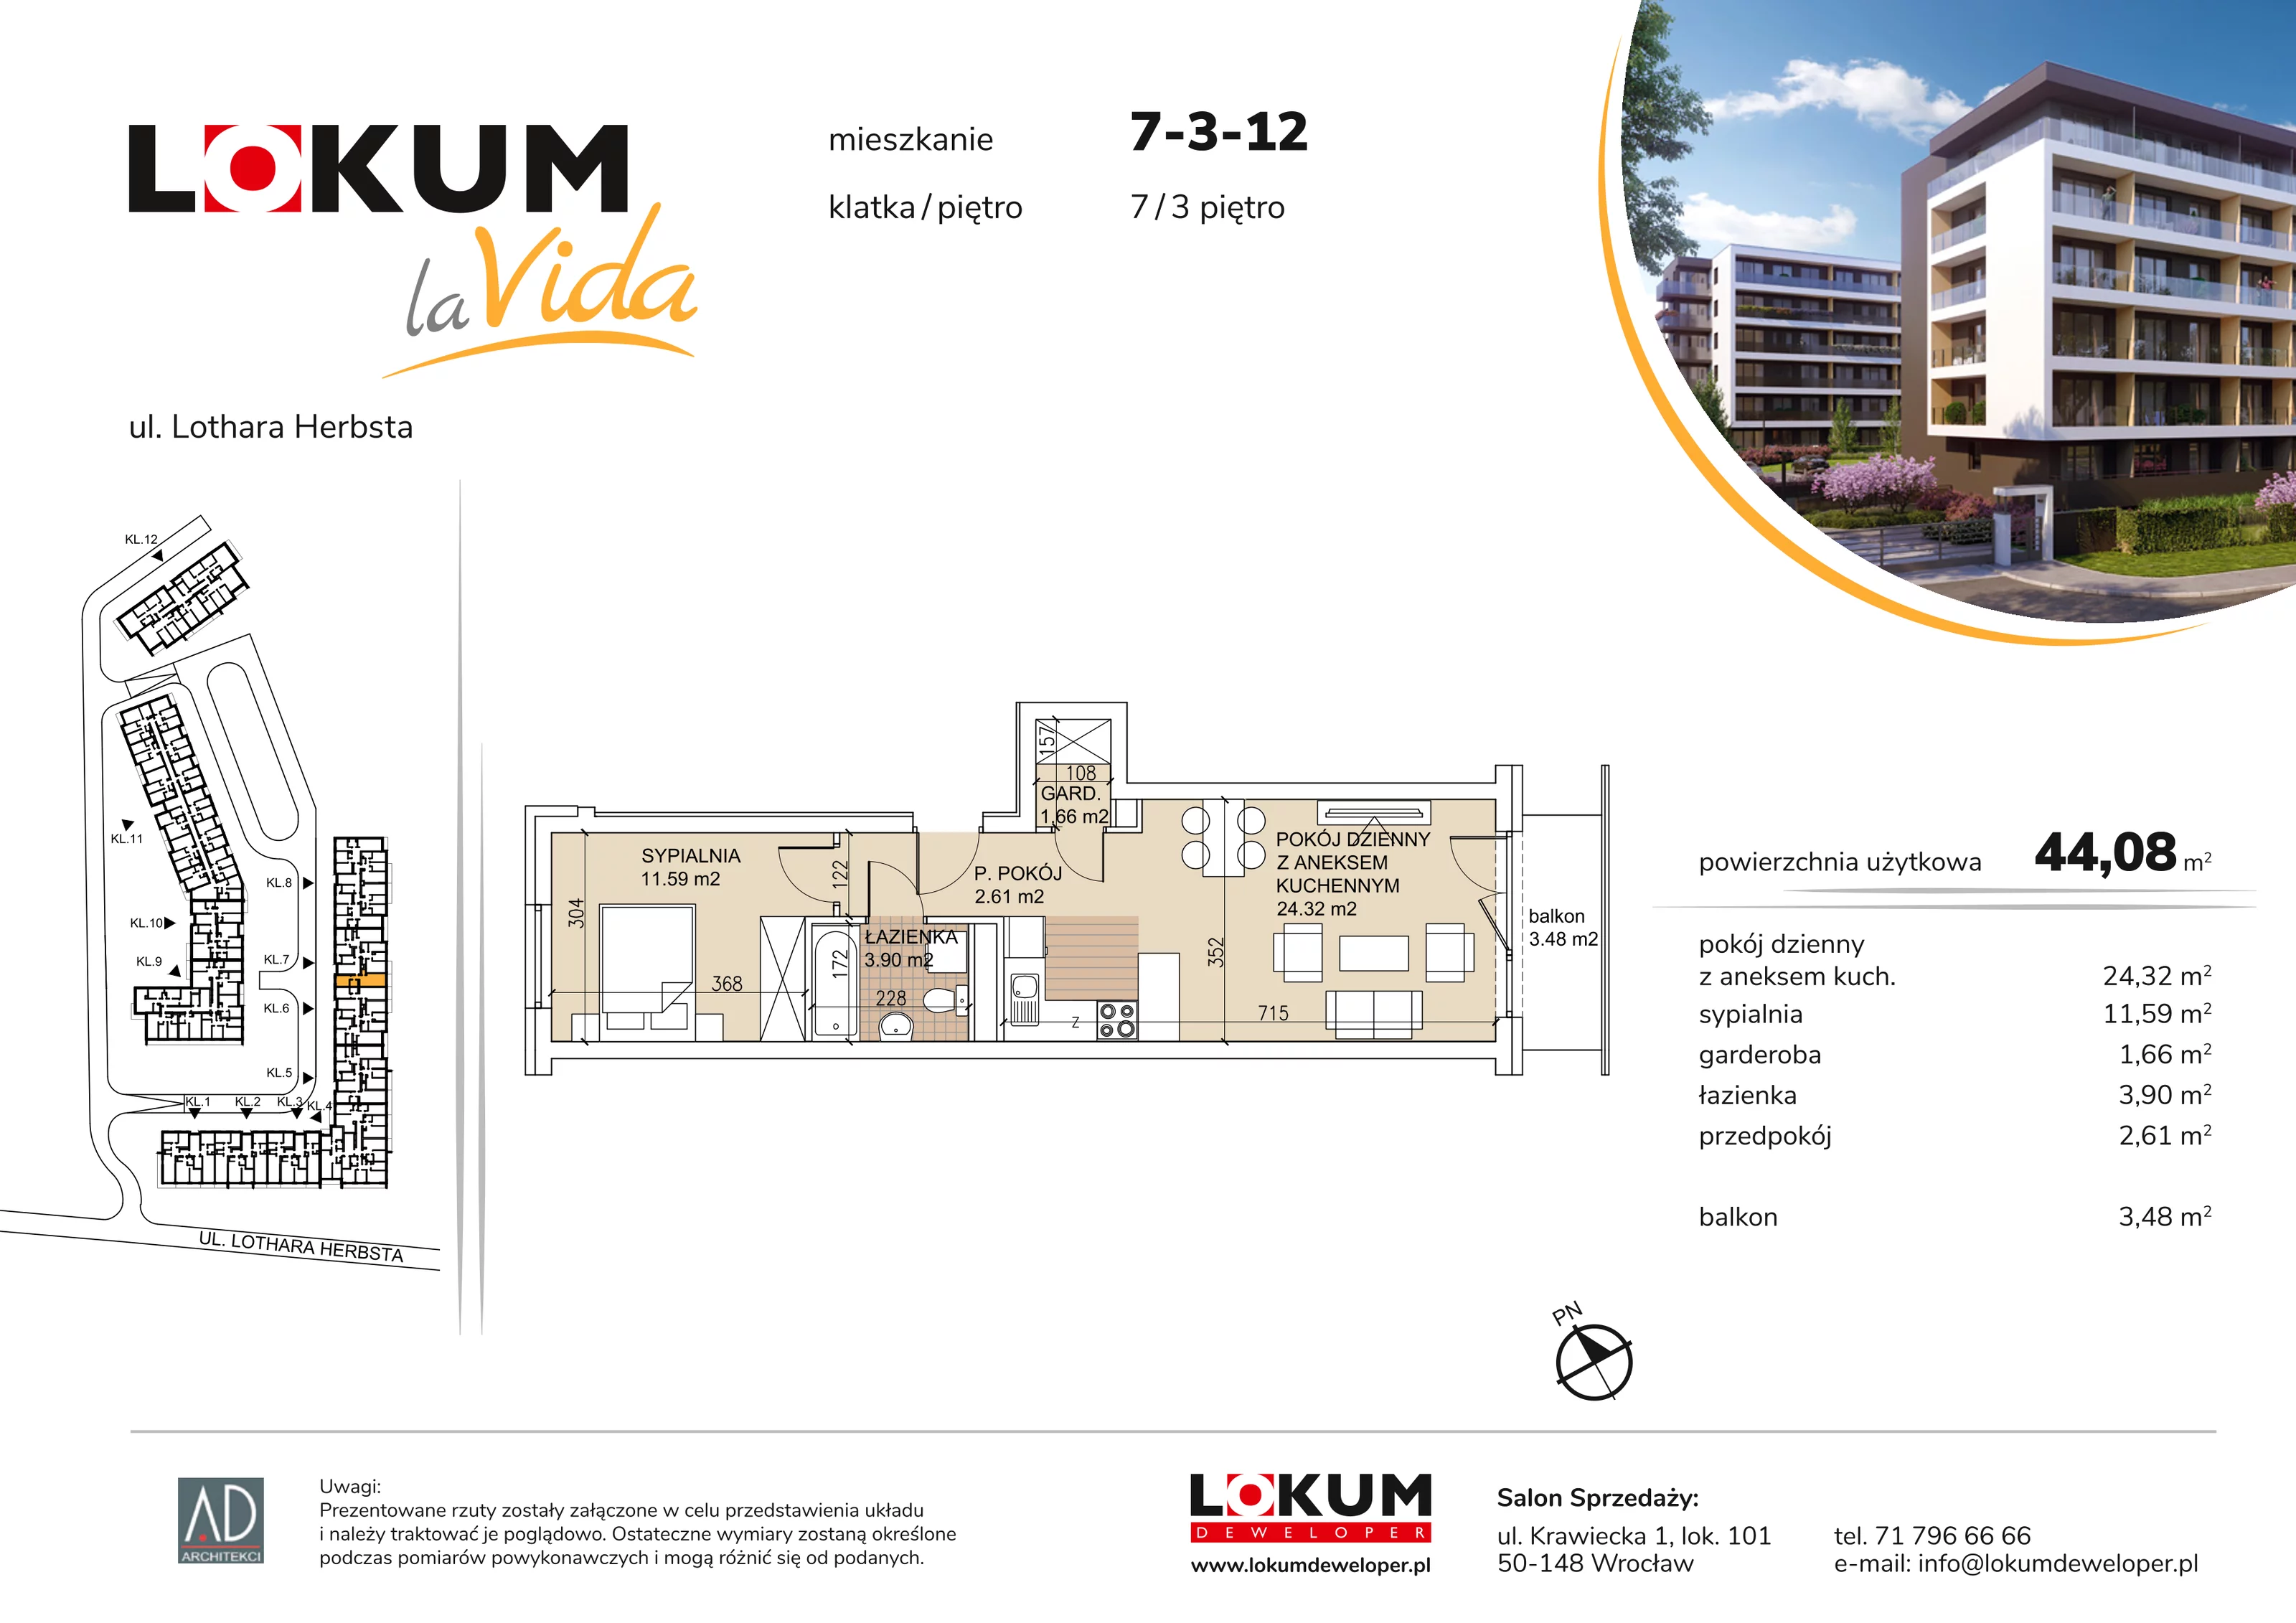 Mieszkanie 44,08 m², piętro 3, oferta nr 7-3-12, Lokum la Vida, Wrocław, Sołtysowice, ul. Lothara Herbsta